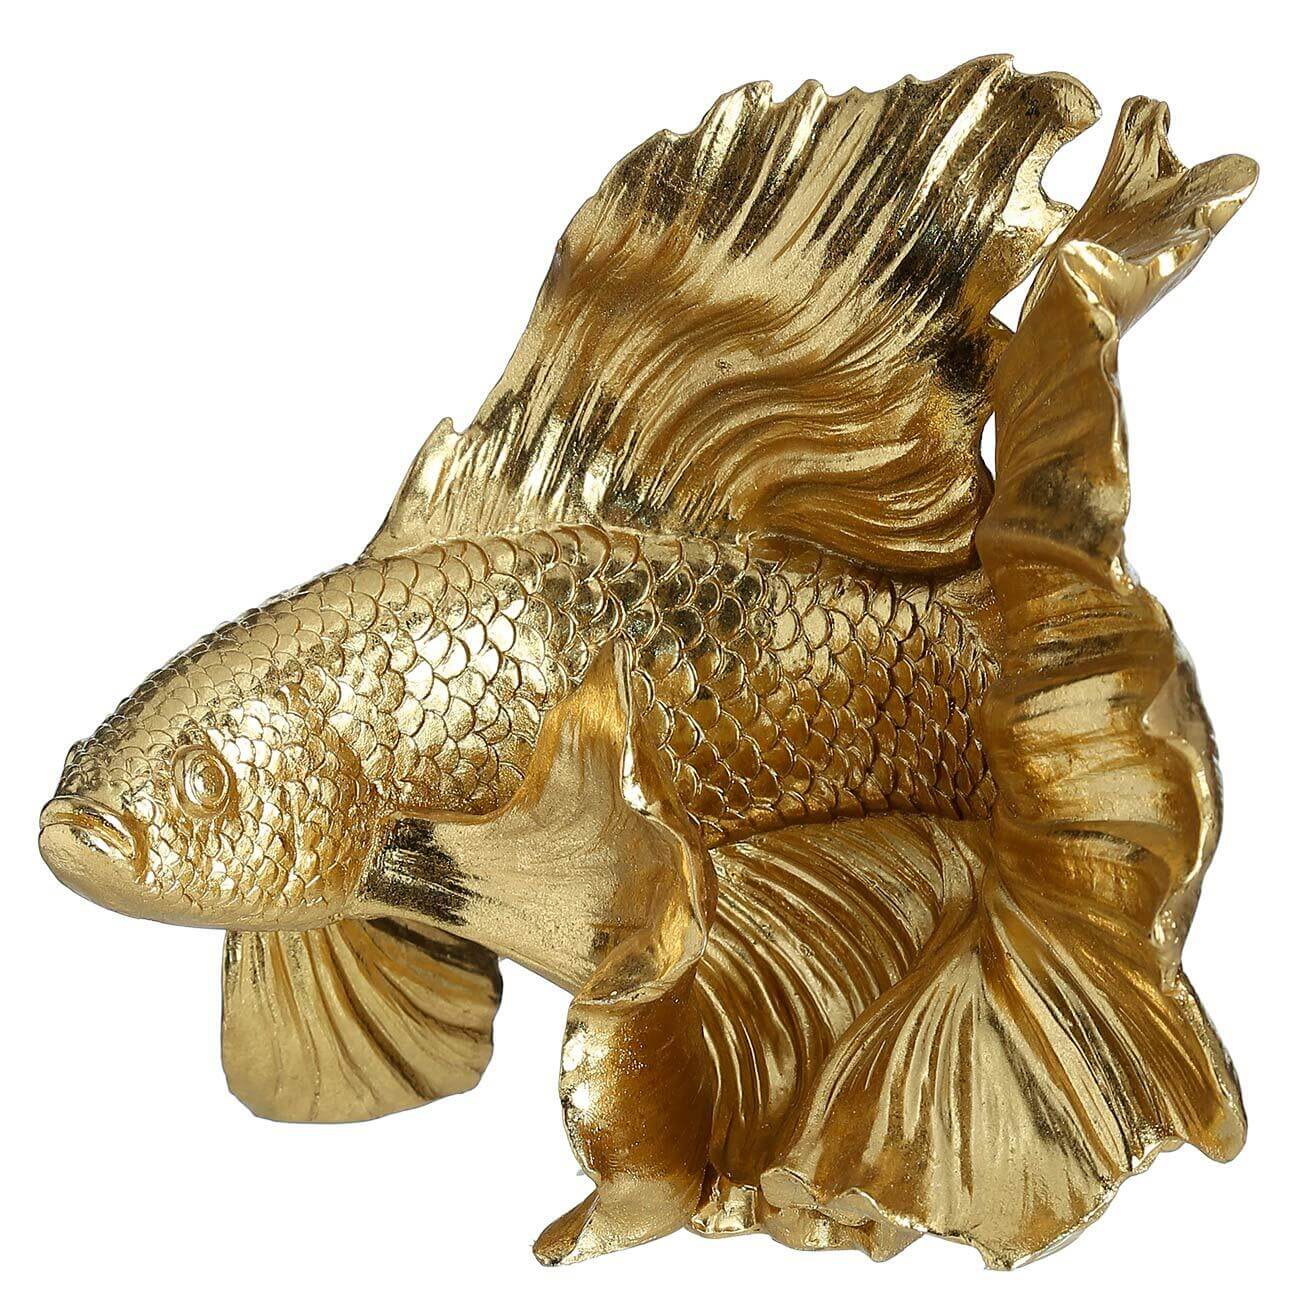 Figurine, 20 cm, polyresin, golden, Fish, Goldfish изображение № 1